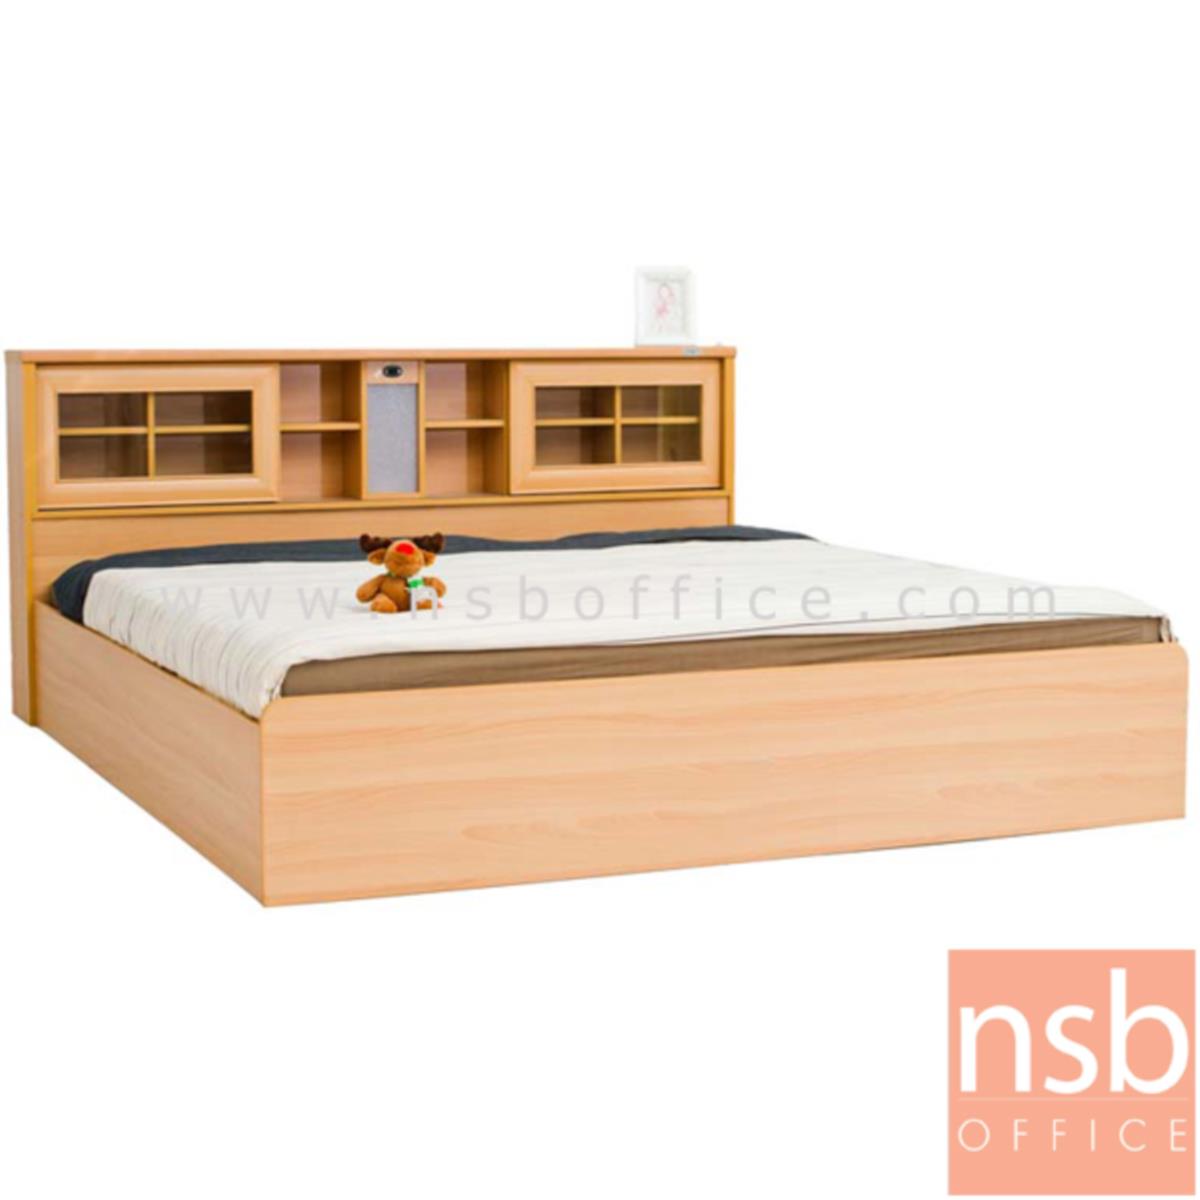 เตียงนอนไม้ รุ่น NSB-SARIKA ขนาด 5ฟุต (มีสต๊อก 5 ชุด สีบีช)   